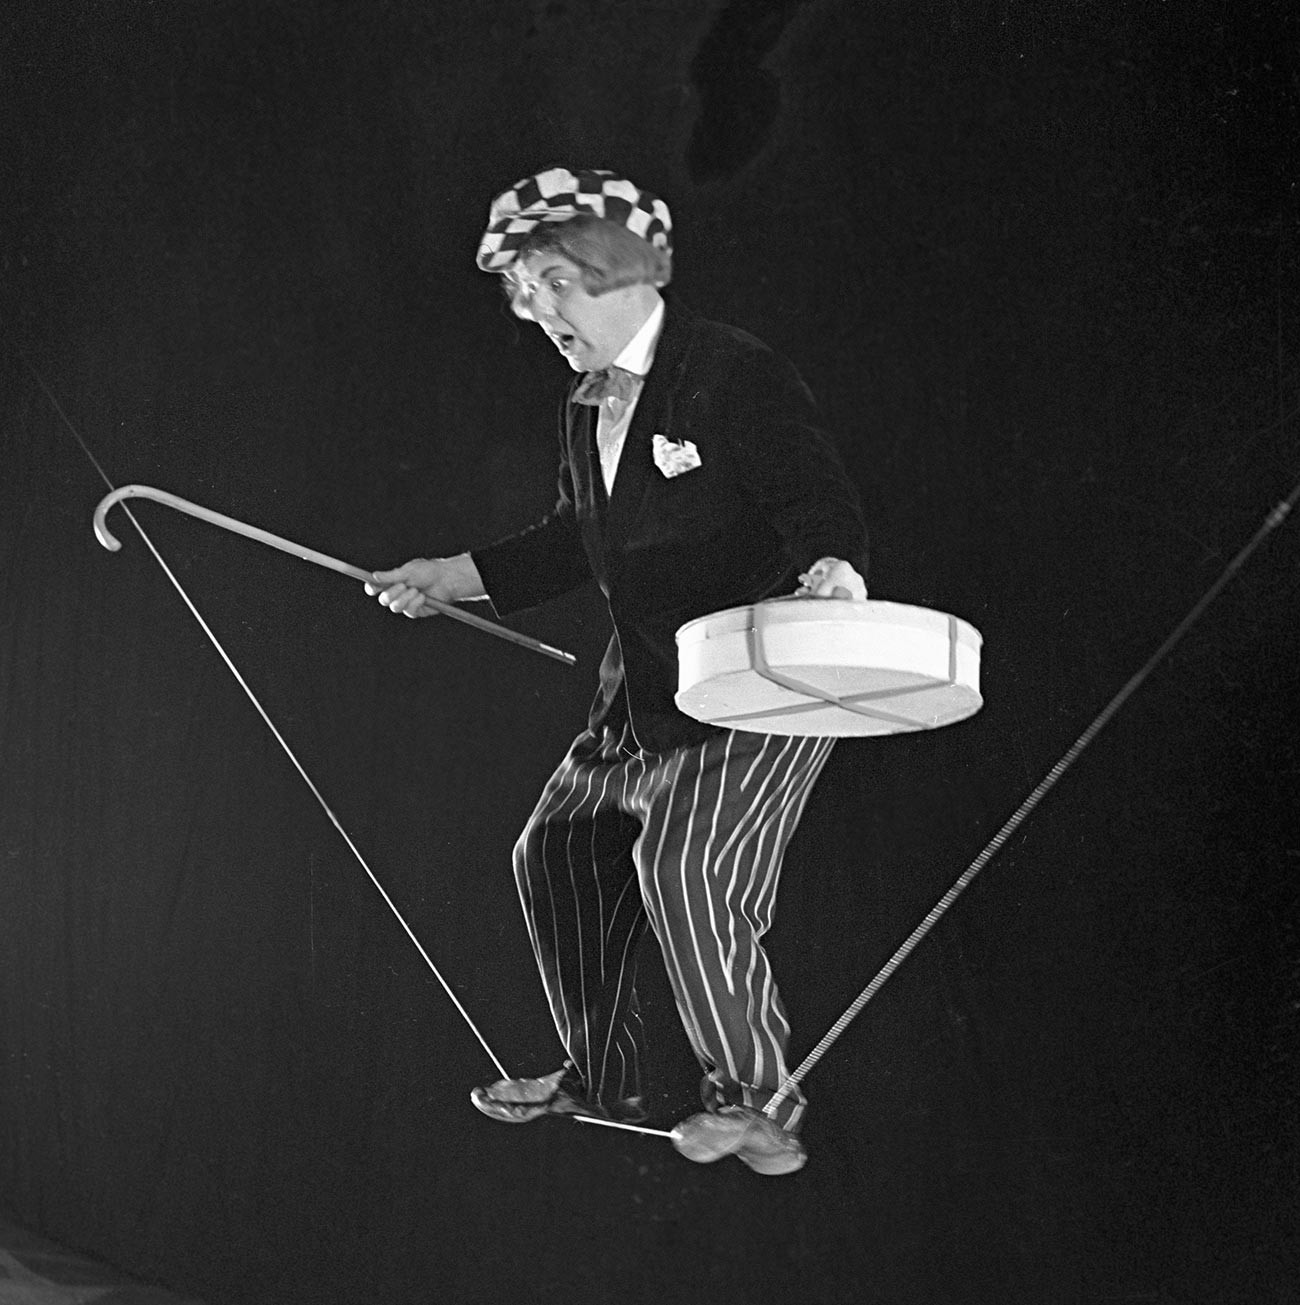 La prima esperienza professionale di Oleg Popov nel circo fu quella di un “eccentrico funambolo”